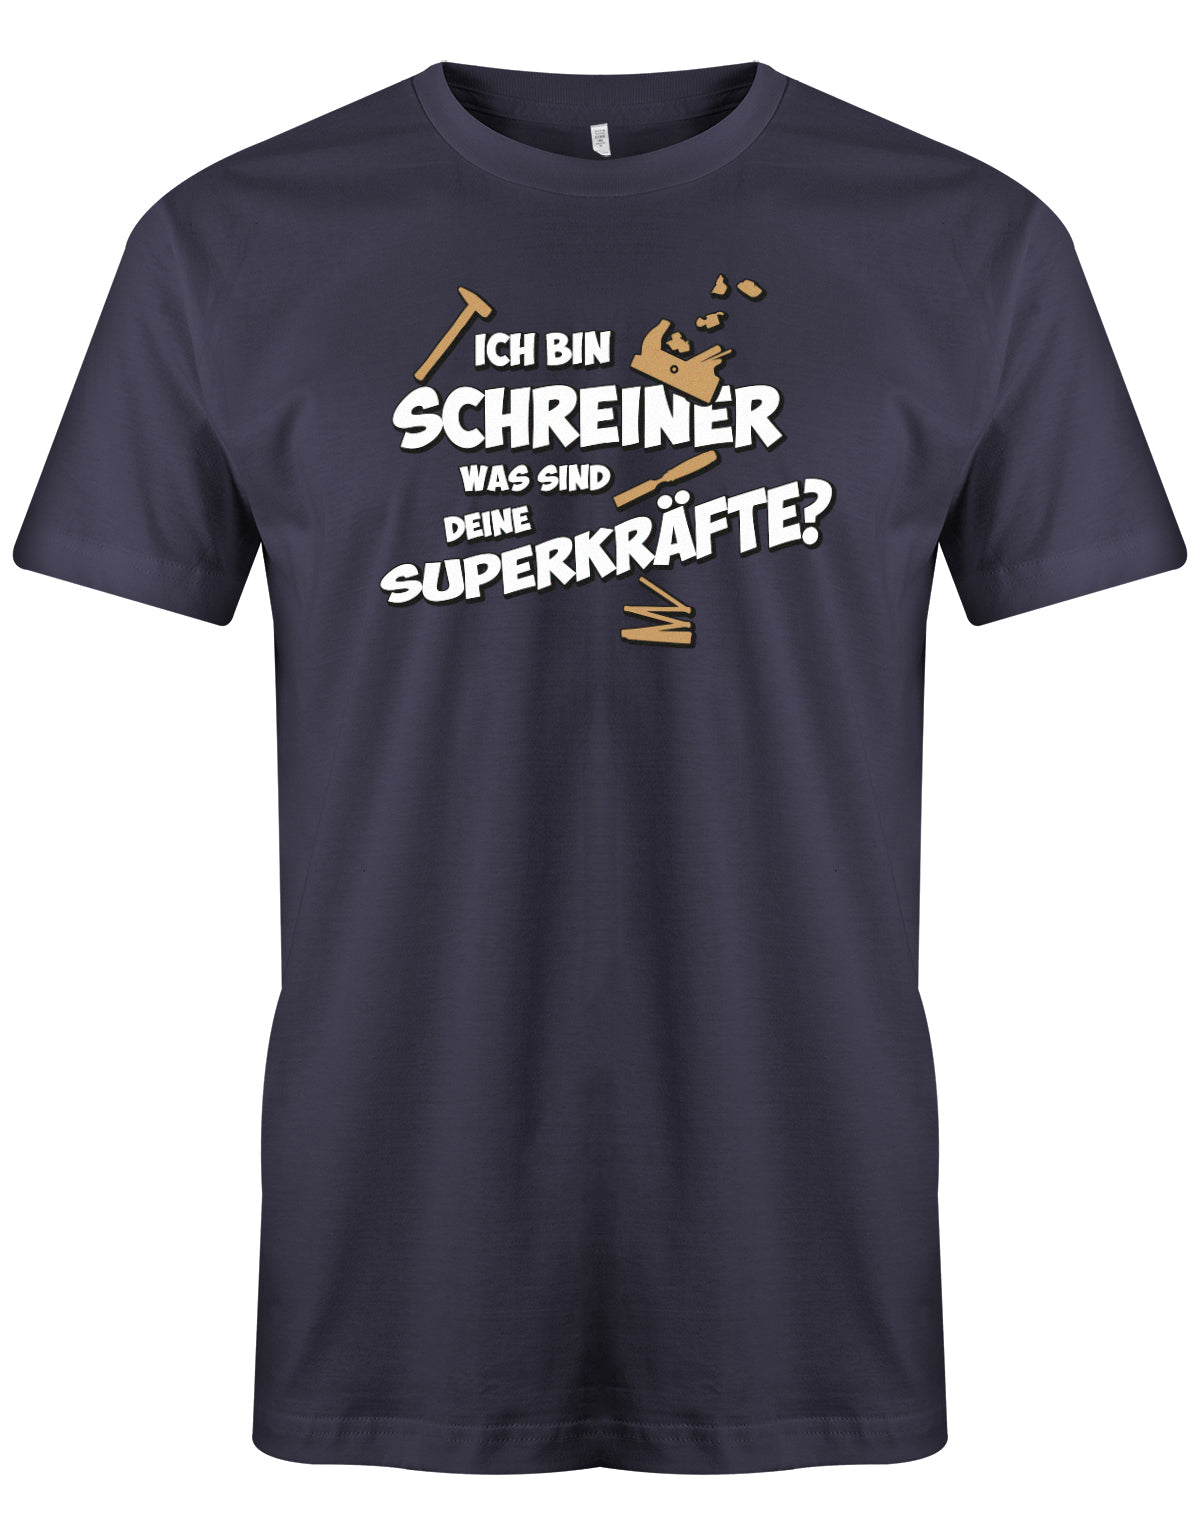 Schreiner und Tischler Shirt. Männer Shirt bedruckt mit: Ich bin Schreiner was sind deine Superkräfte? Navy